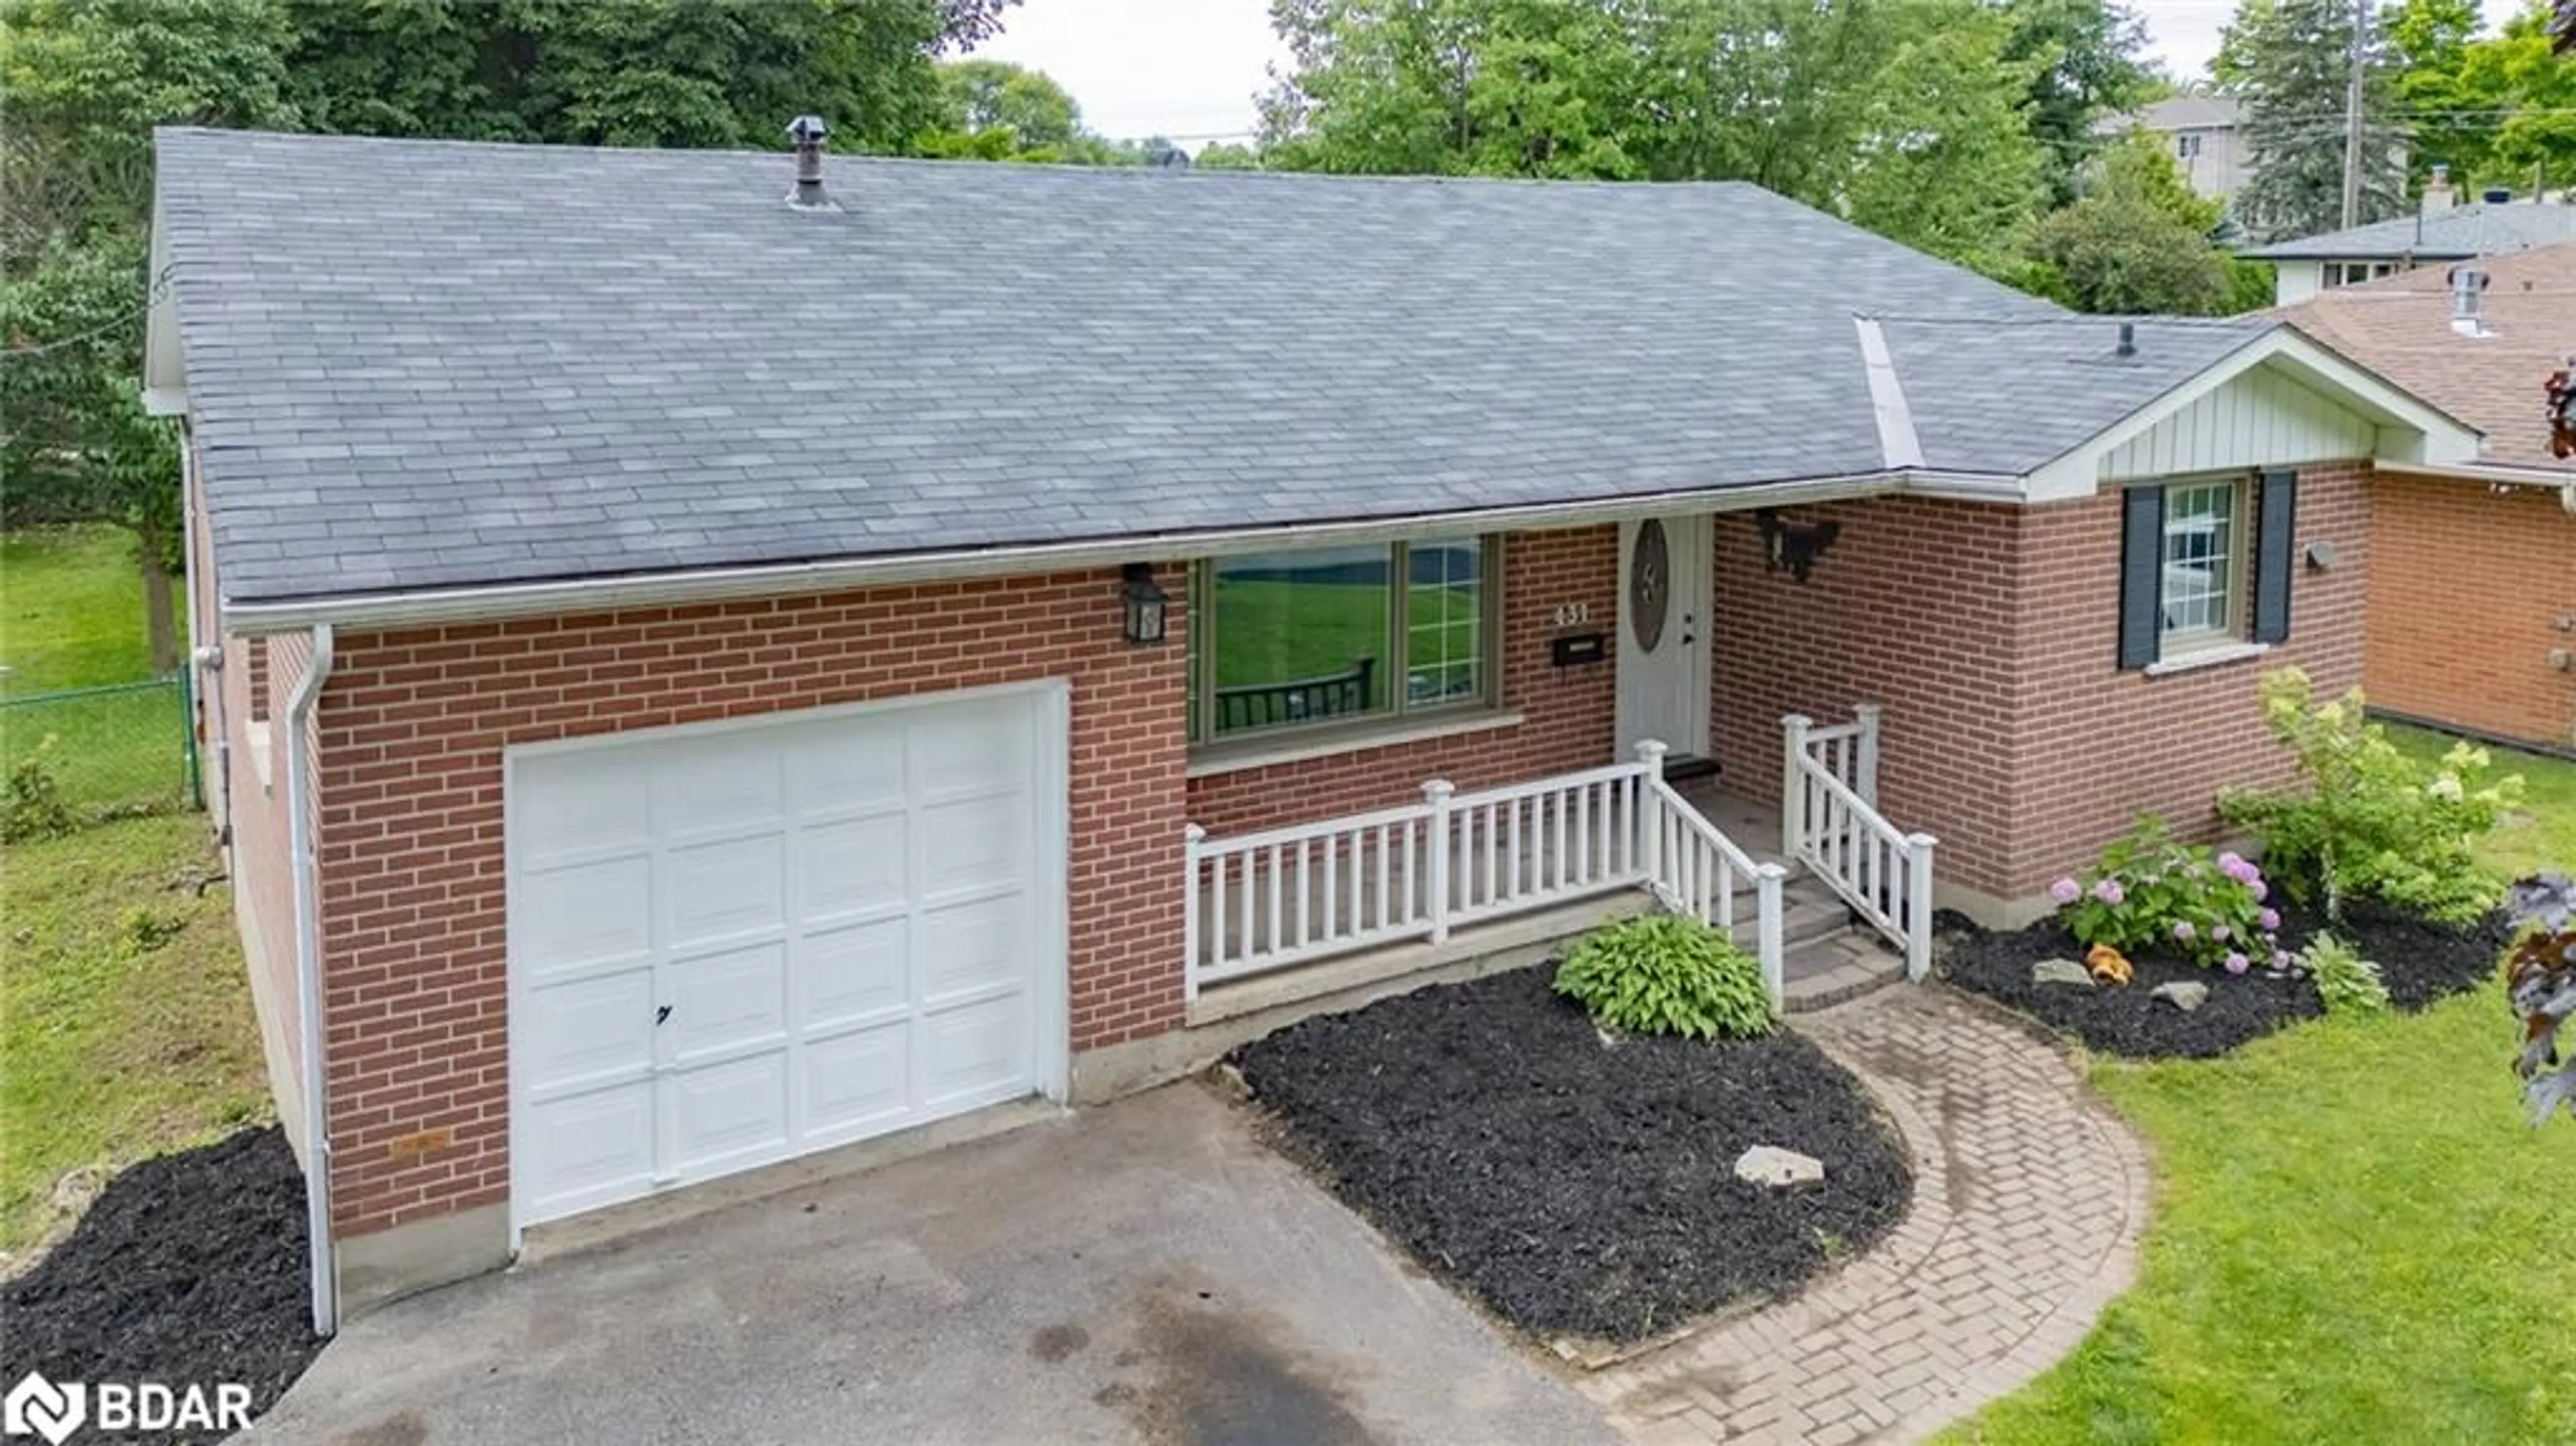 Home with brick exterior material for 431 Highland Ave, Orillia Ontario L3V 4E8